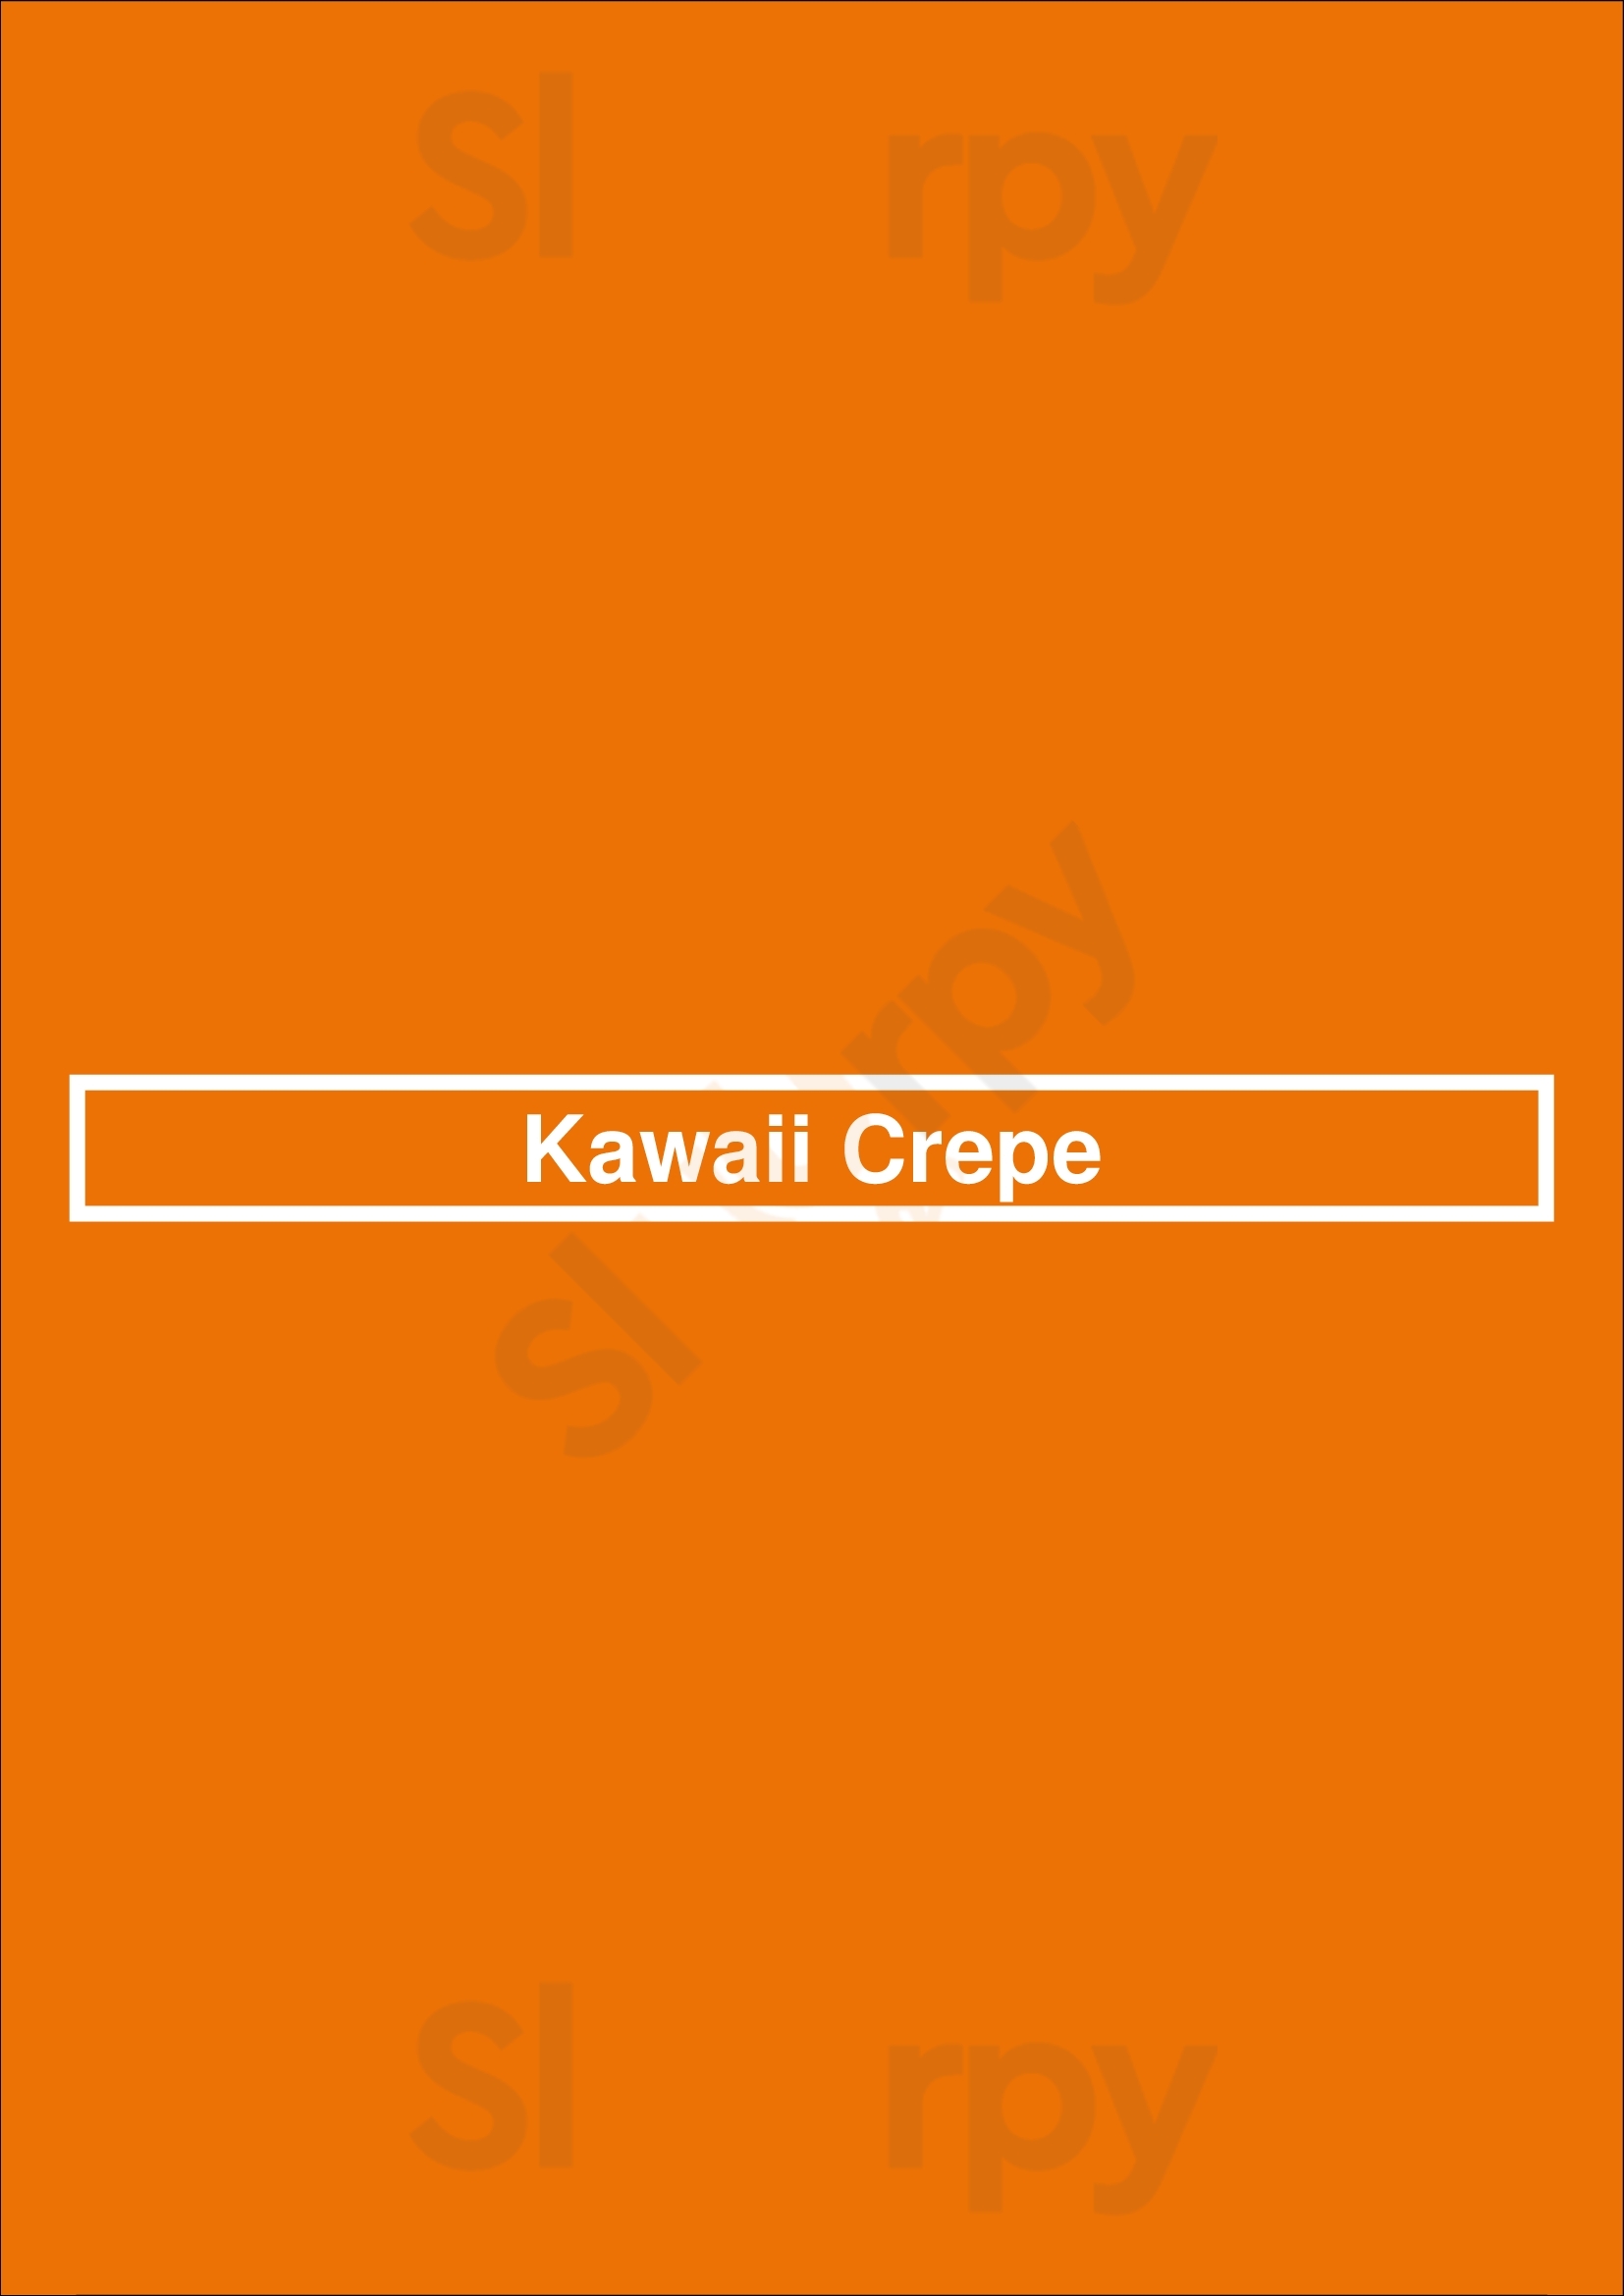 Kawaii Crepe Winnipeg Menu - 1